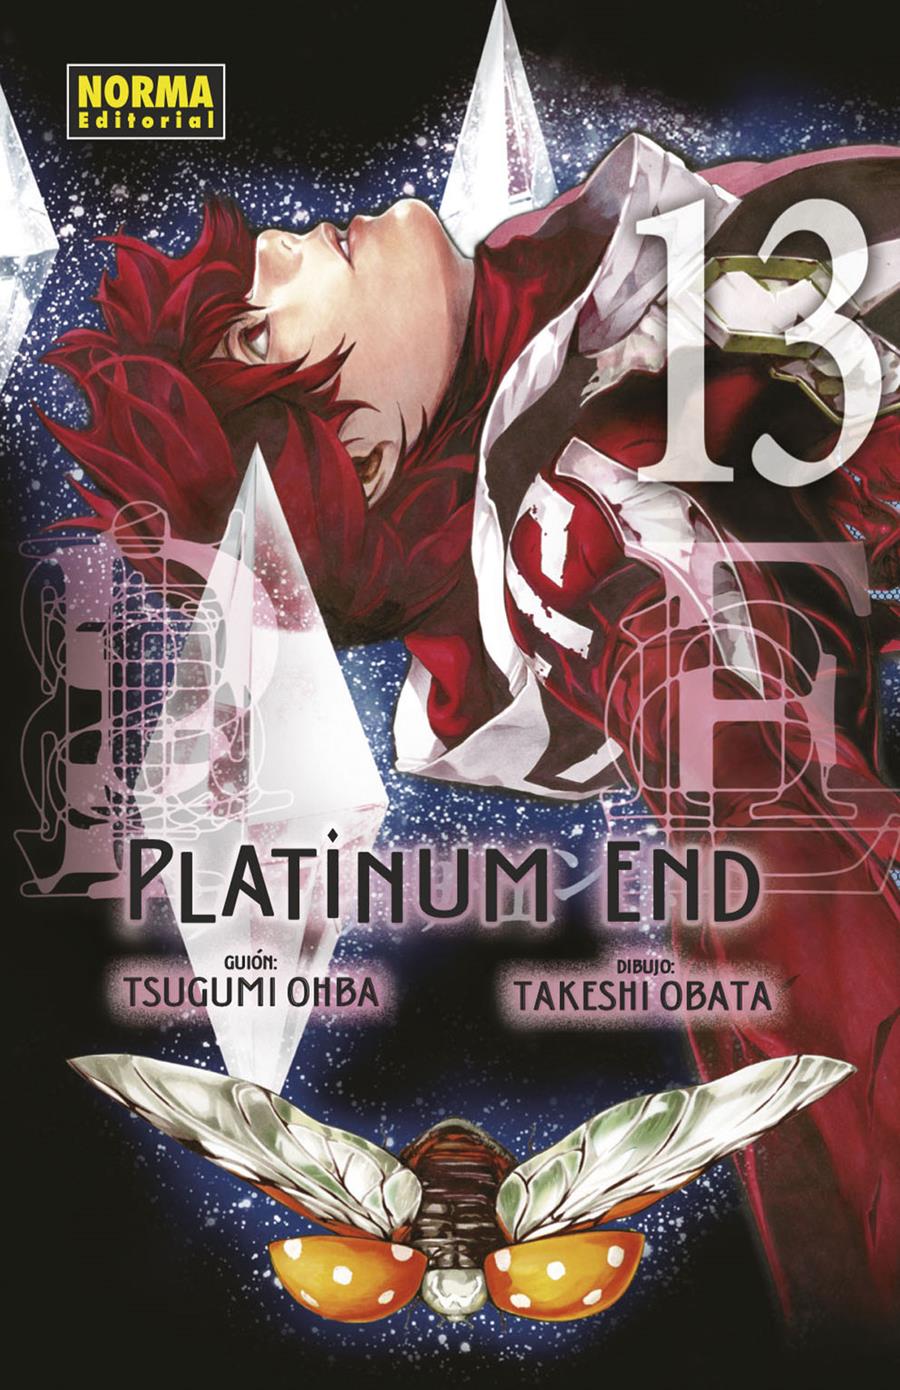 Platinum End 13 | N0721-NOR24 | Tsugumi Ohba, Takeshi Obata | Terra de Còmic - Tu tienda de cómics online especializada en cómics, manga y merchandising